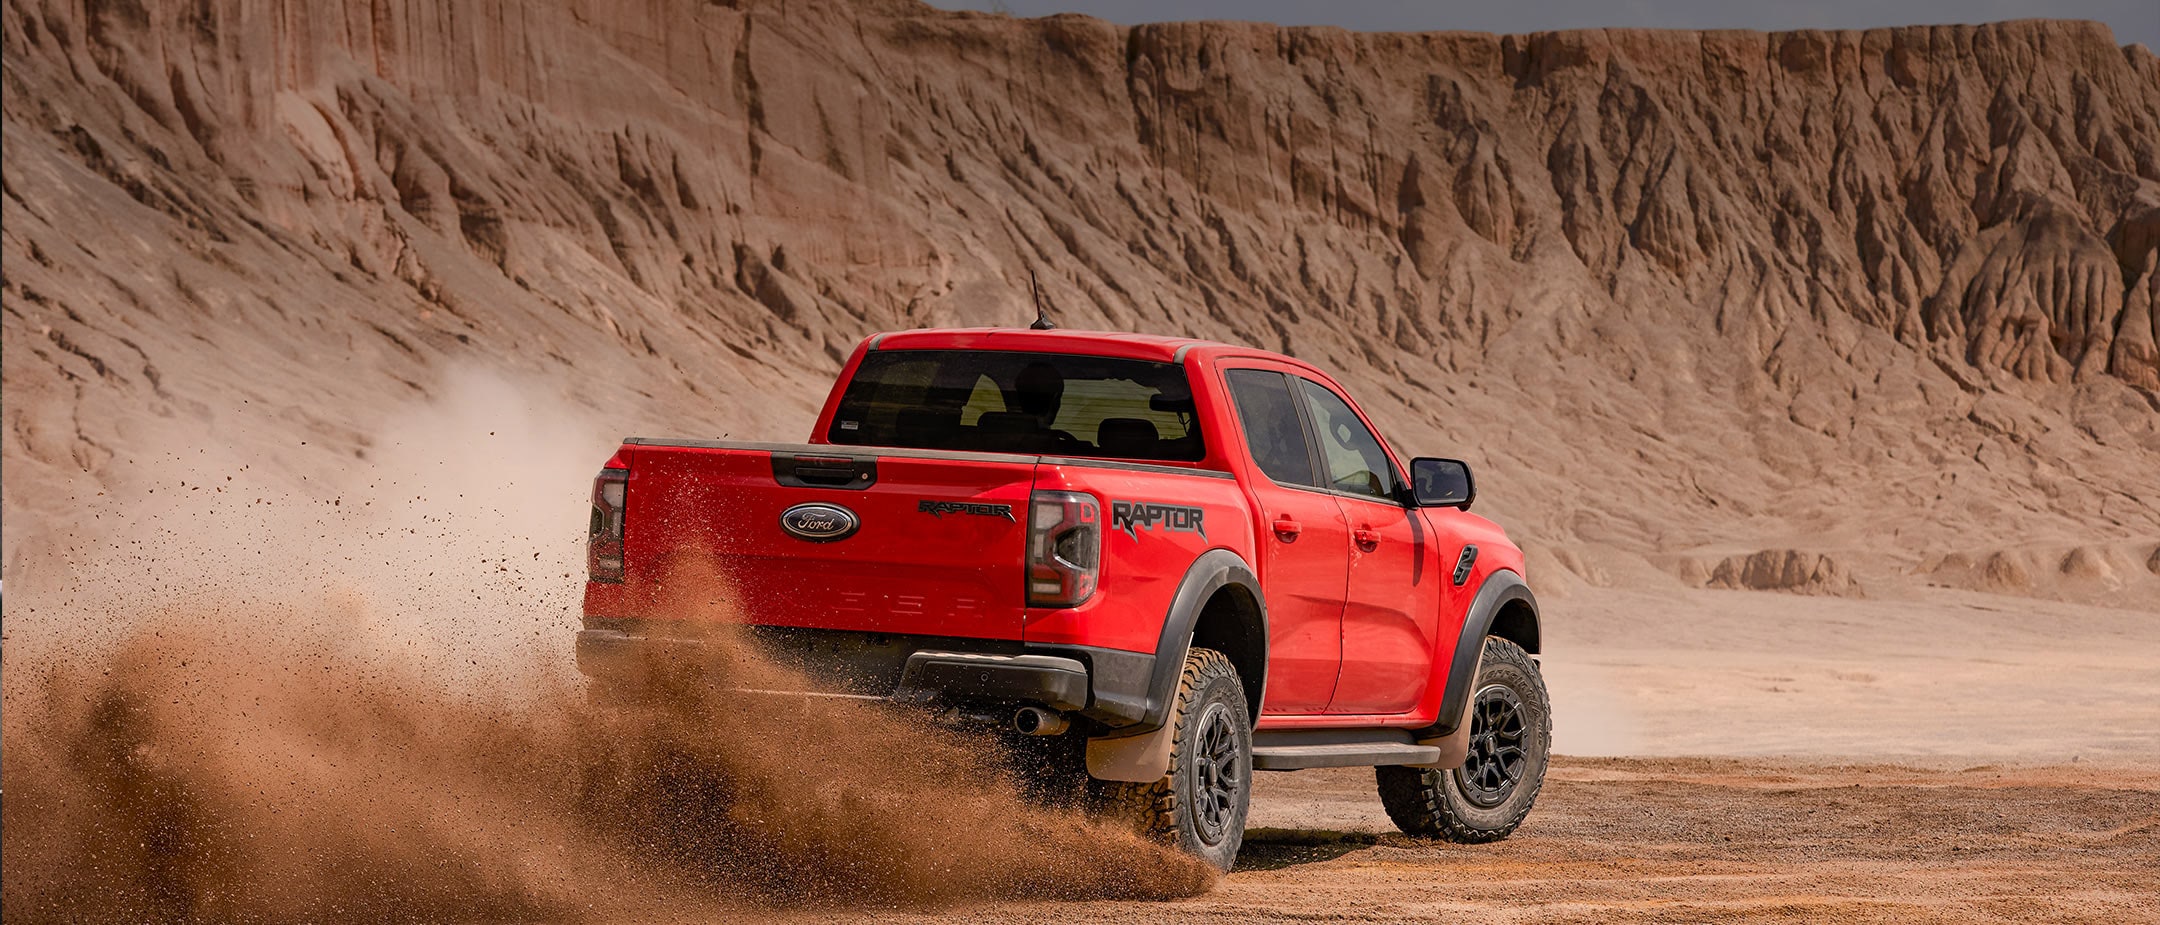 Ford Ranger Raptor in Rot. Heckansicht, fährt in einer Wüstenlandschaft